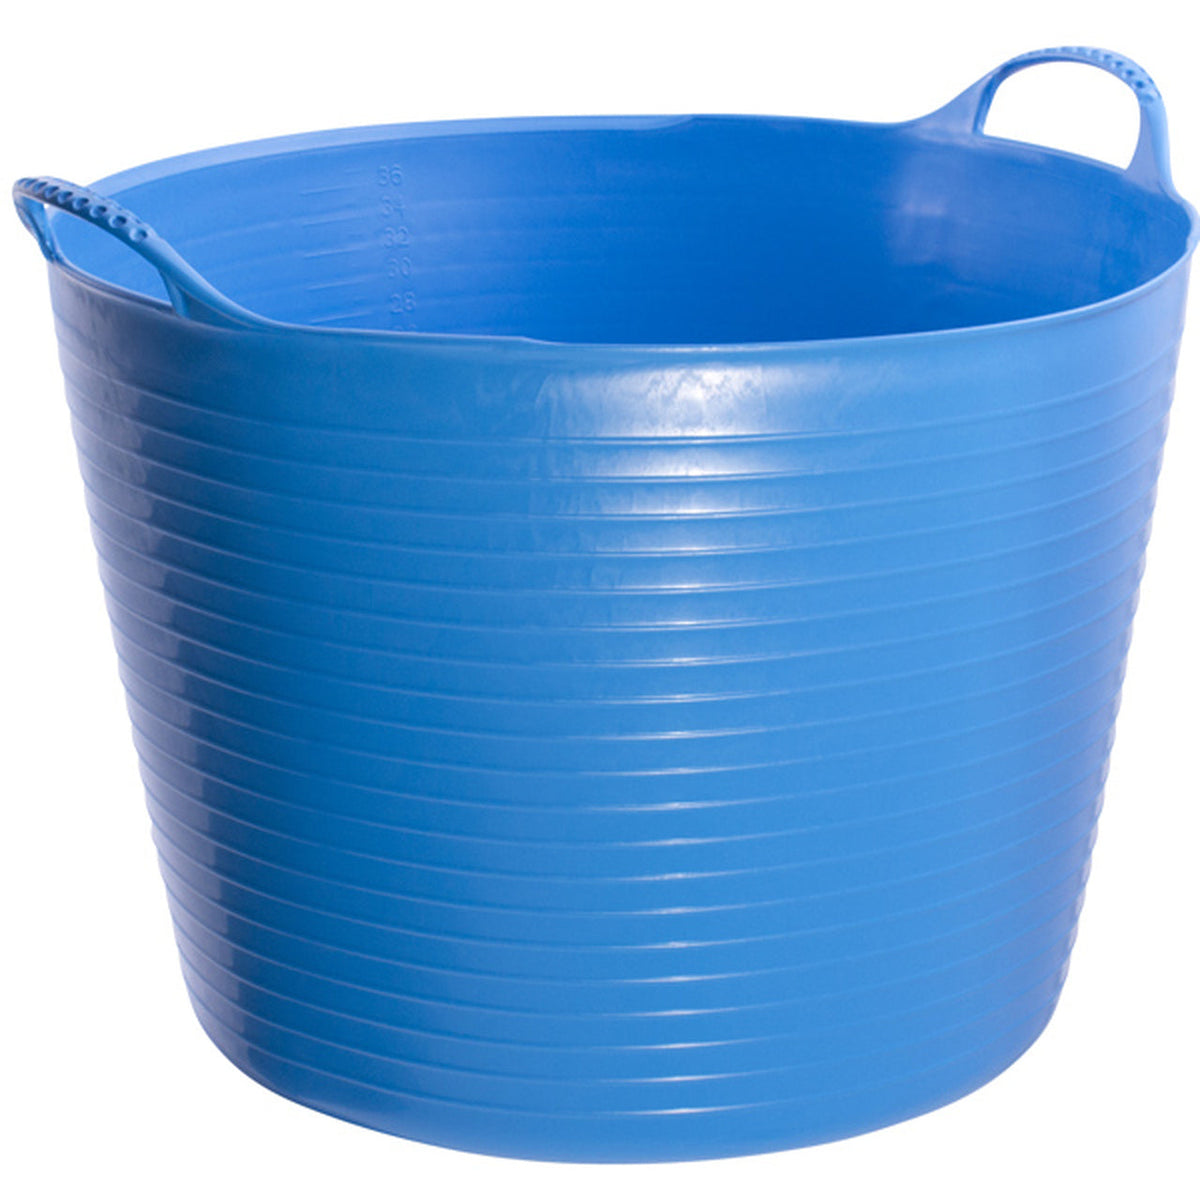 Bright blue bucket